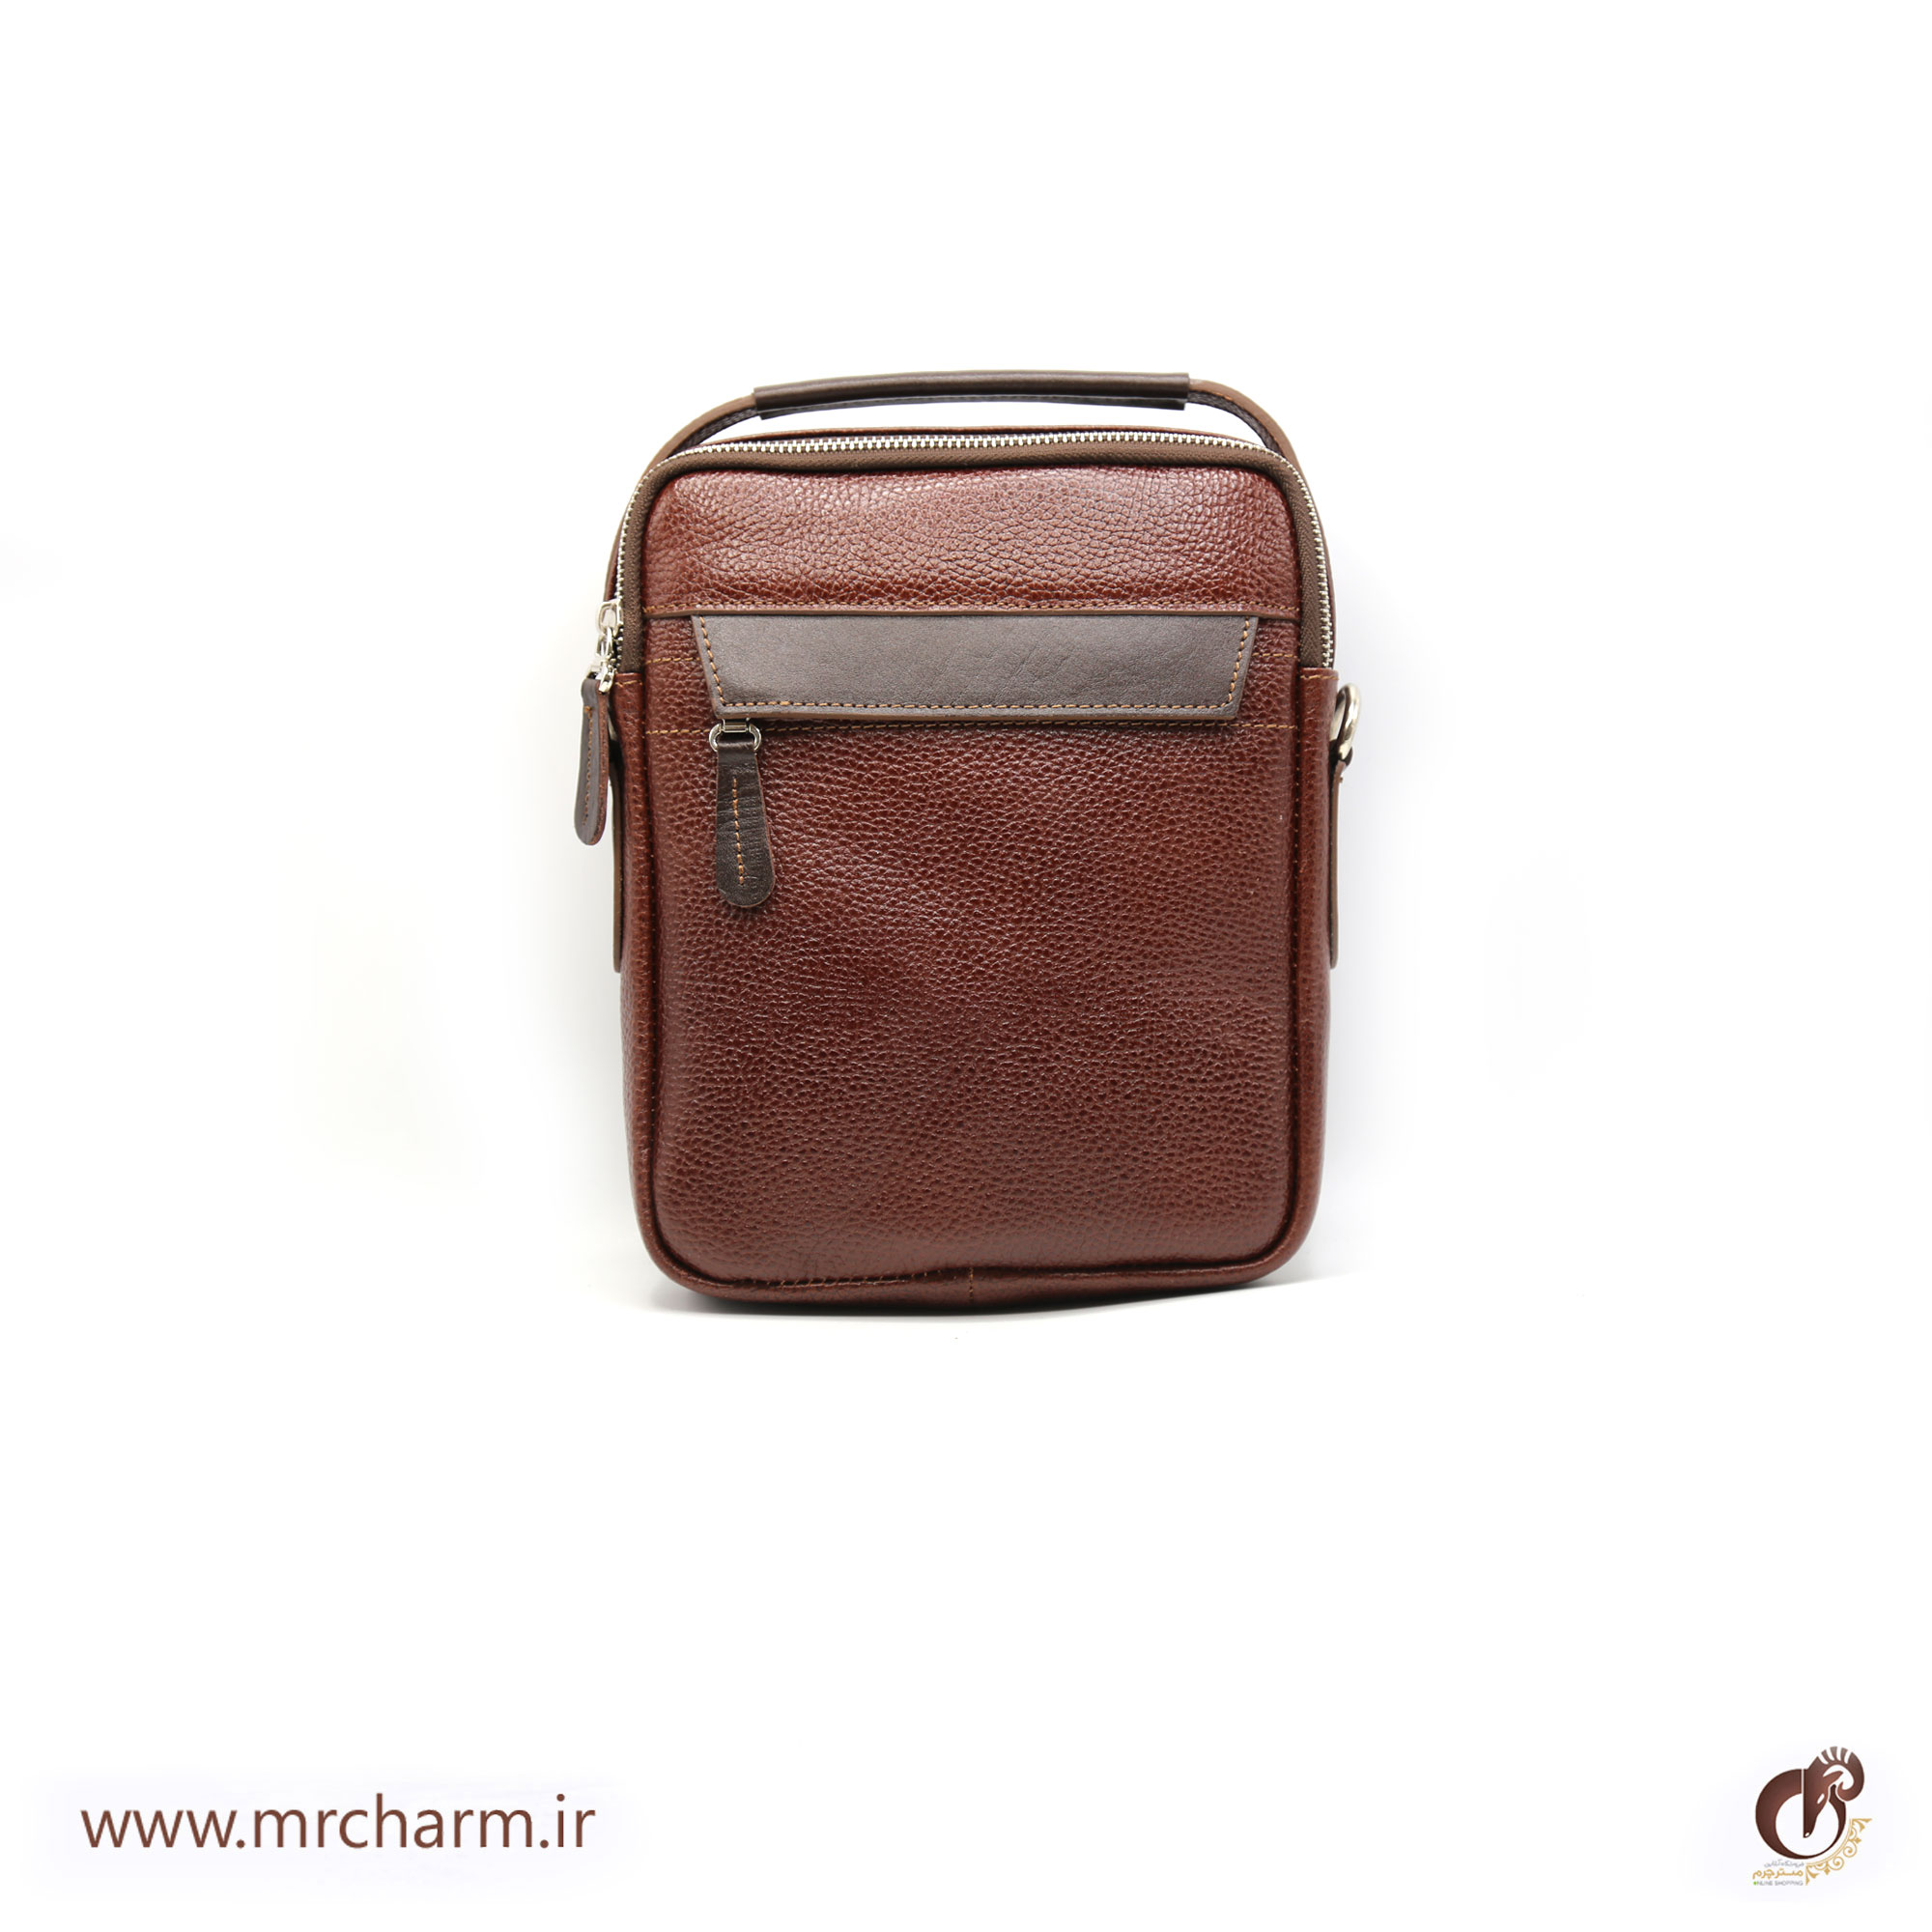 کیف دوشی مردانه زیپ دار فلوتر mrch11475-1